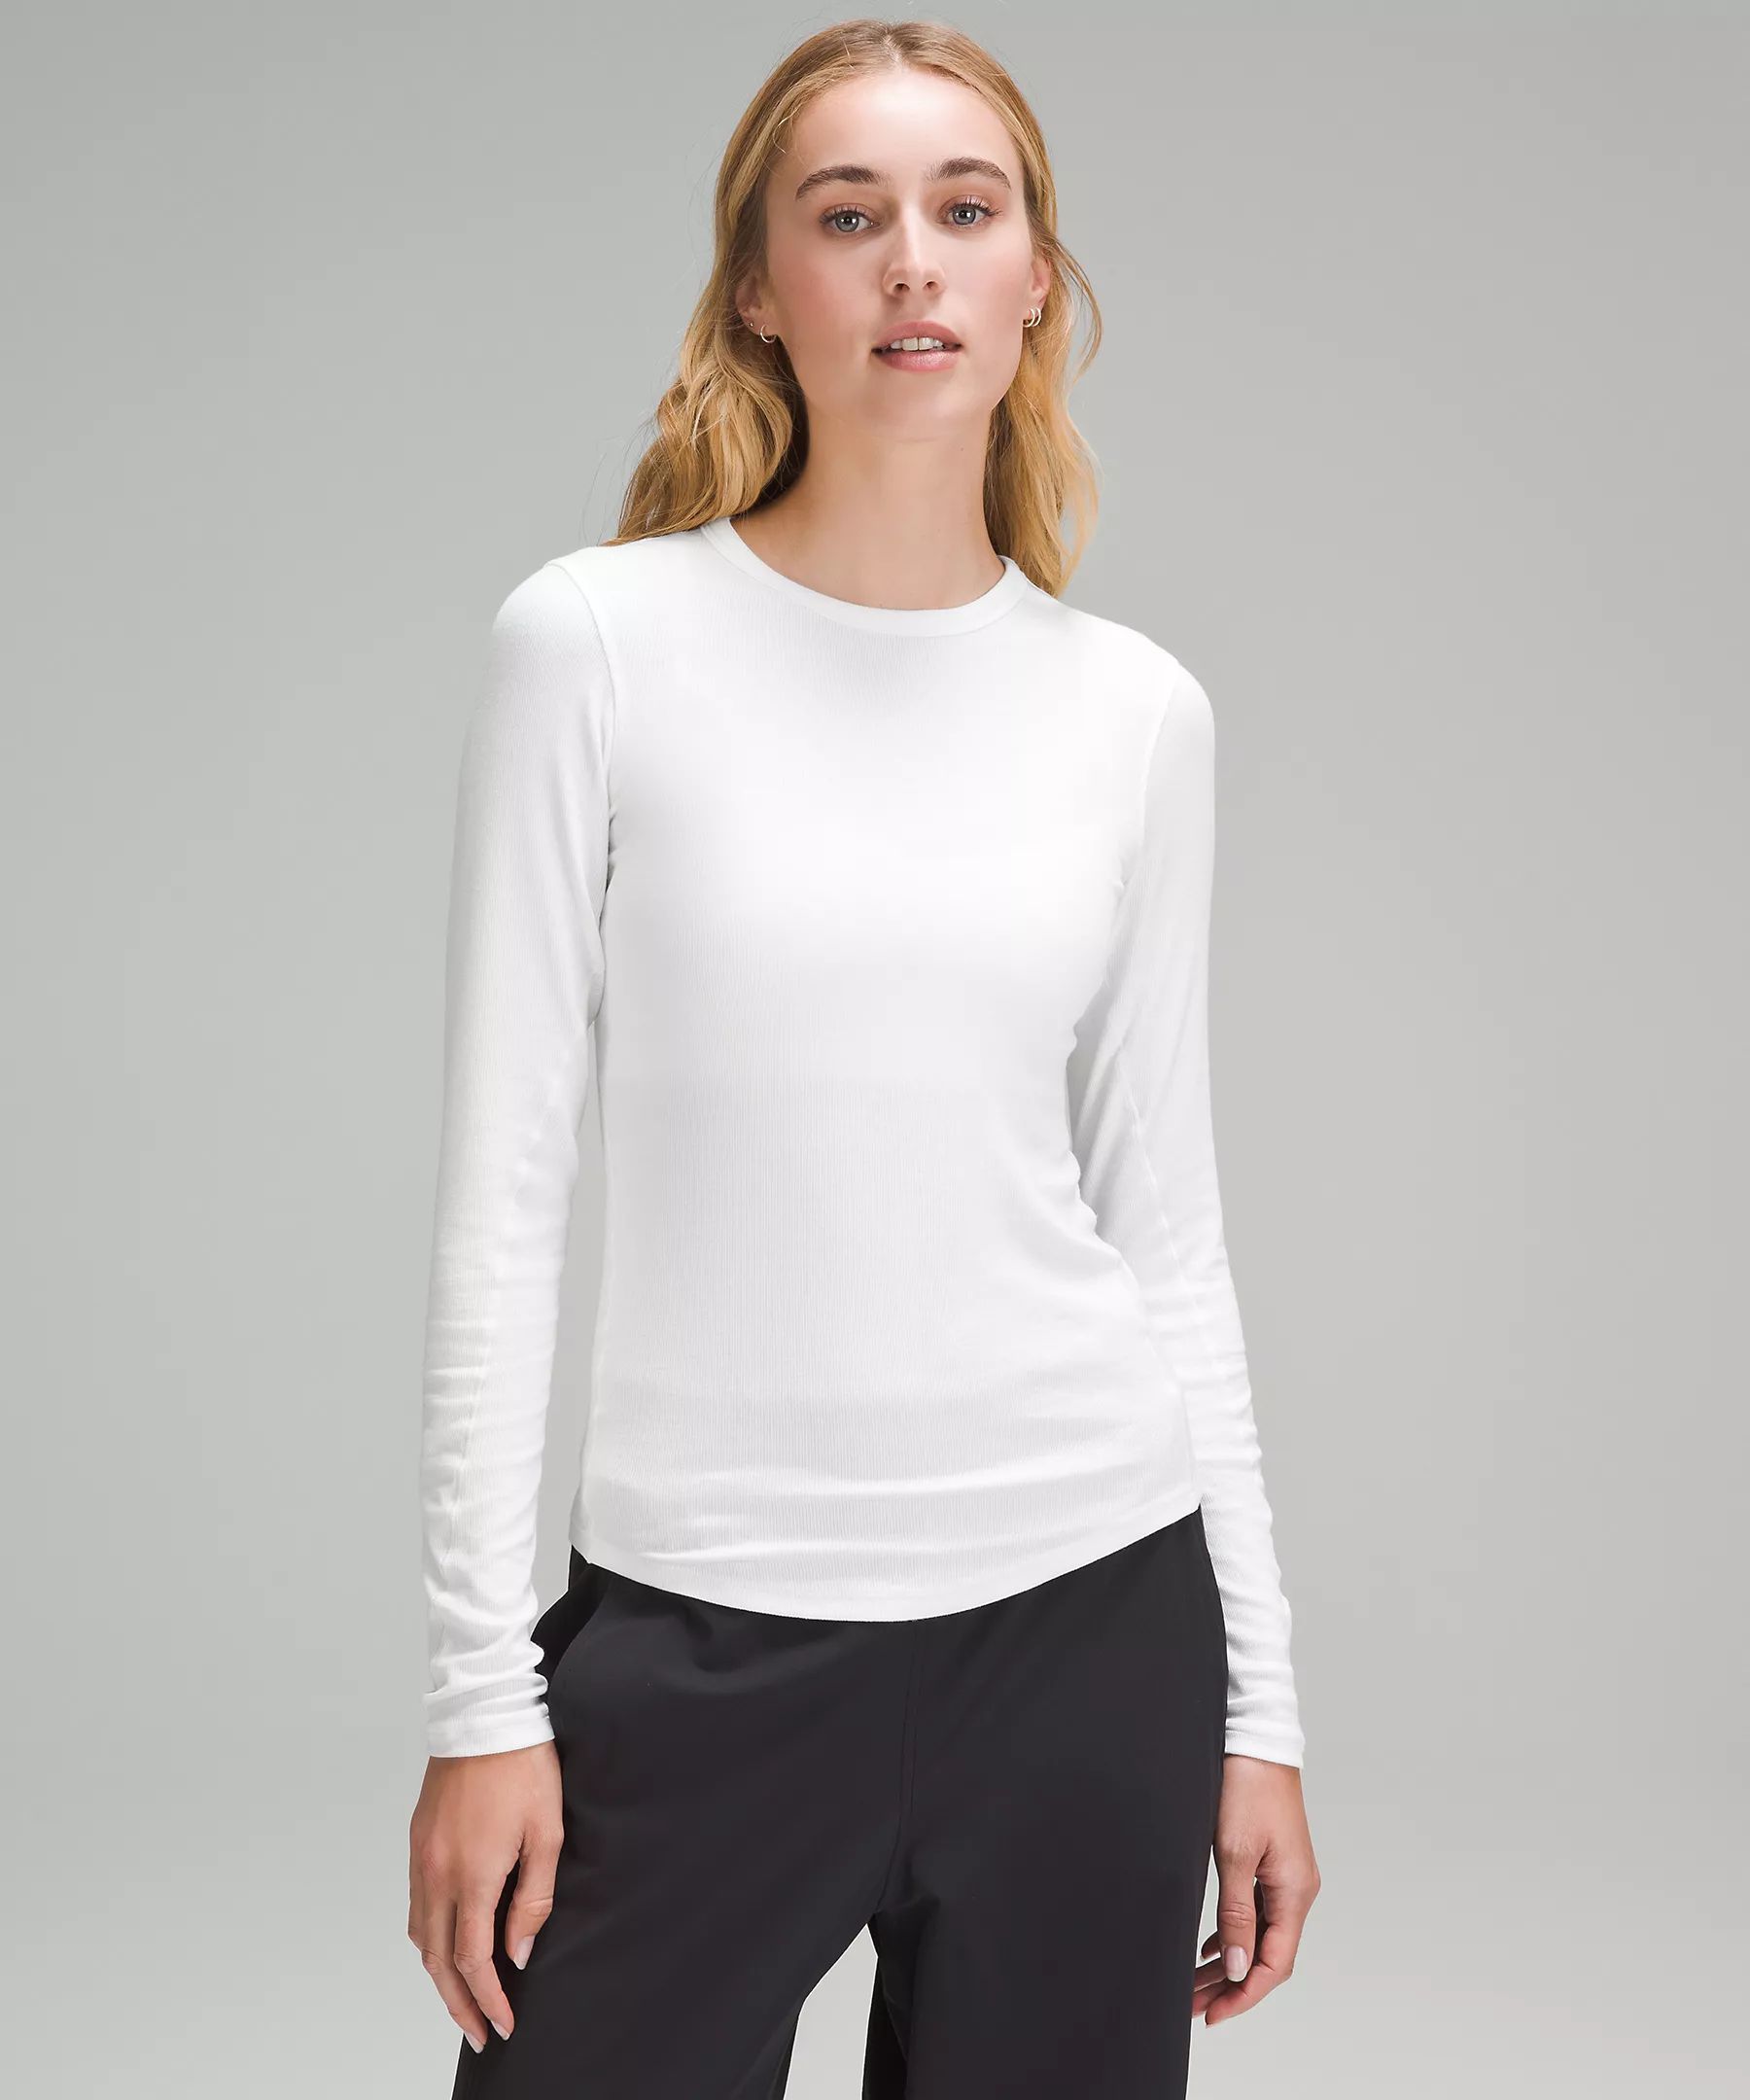 Hold Tight Long Sleeve Shirt | Women's Long Sleeve Shirts | lululemon | Lululemon (US)